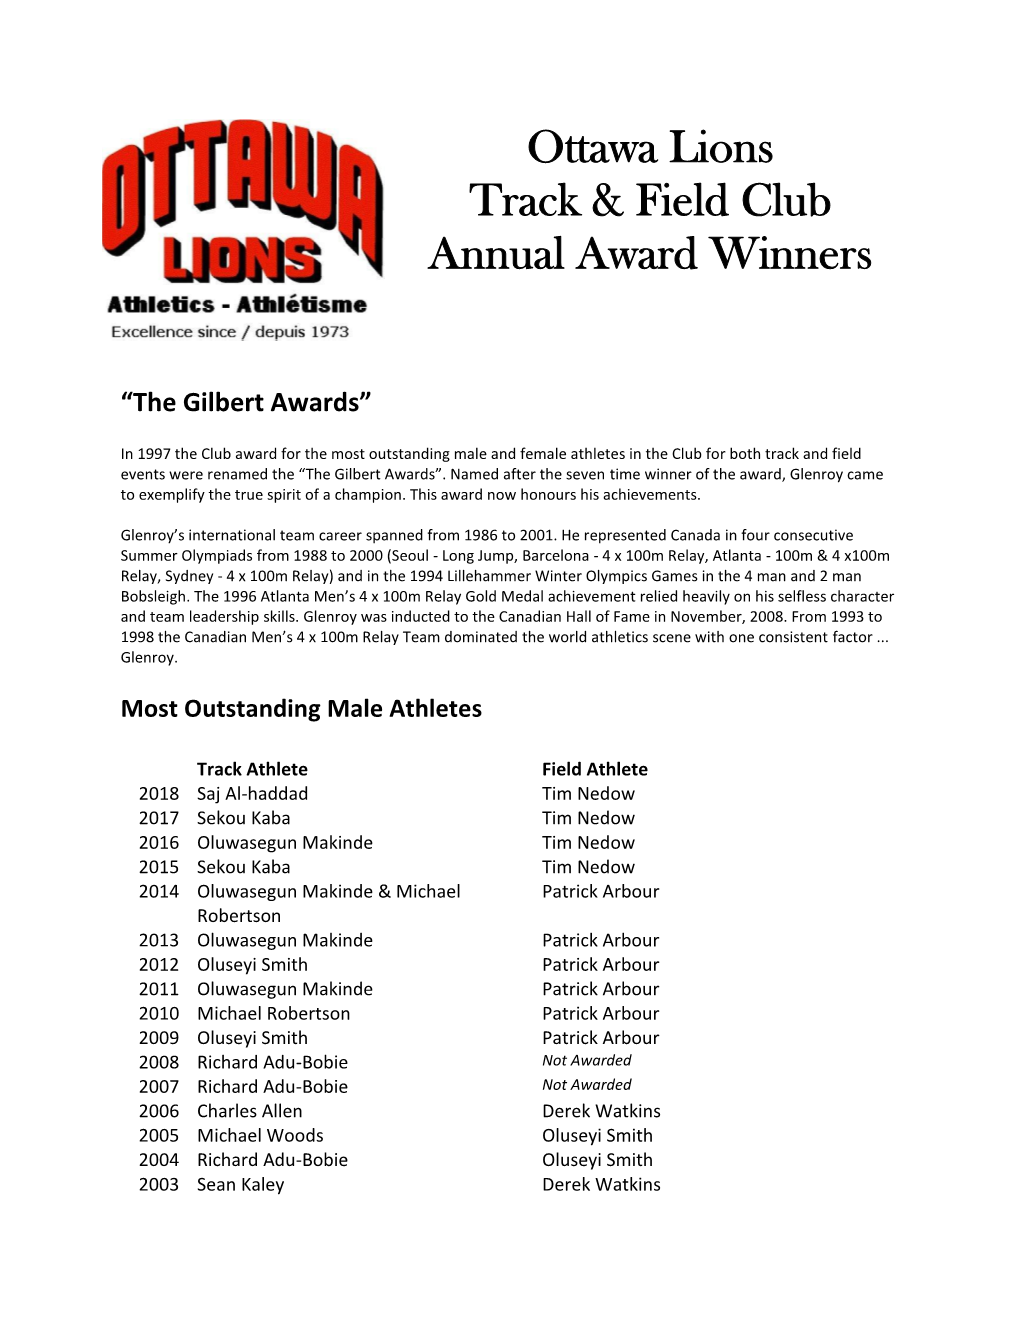 Ottawa Lions Track & Field Club Annual Award Winners